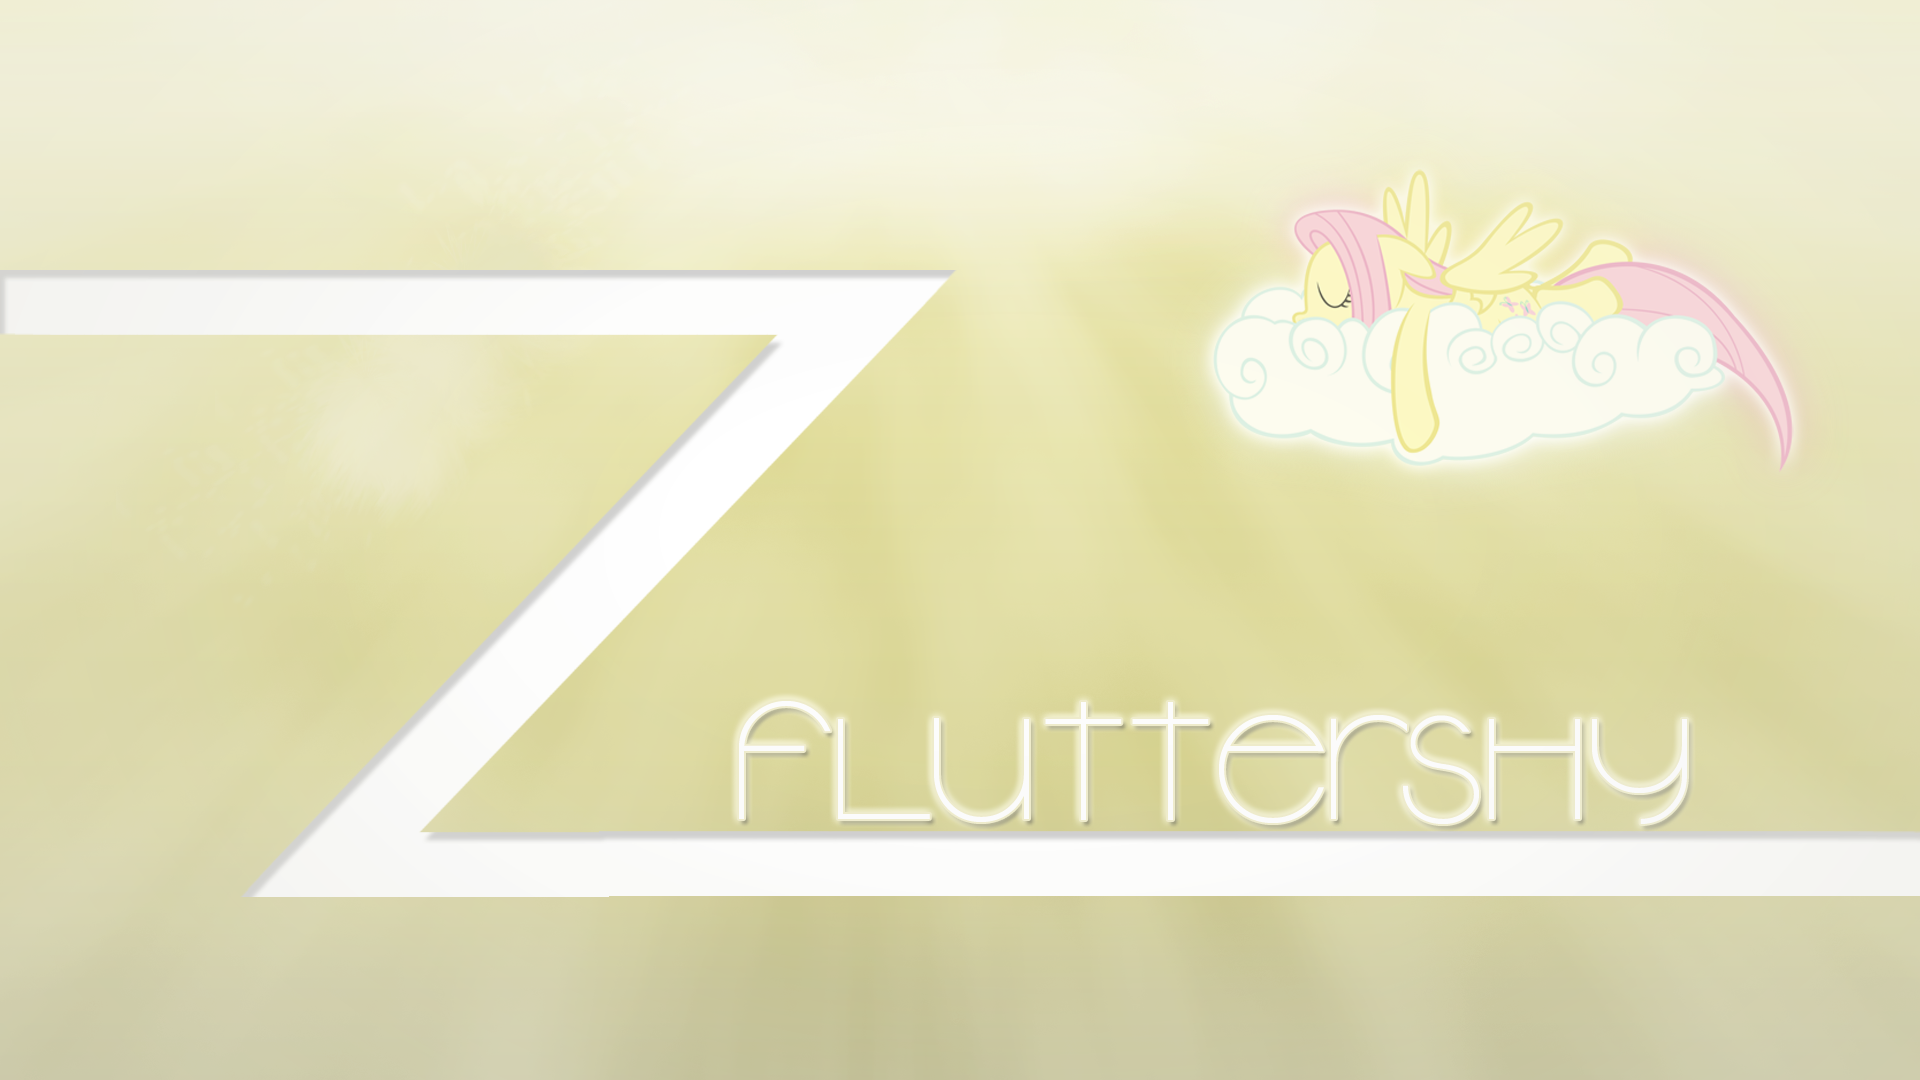 Fluttershy Wallpaper 2 by AAlegends